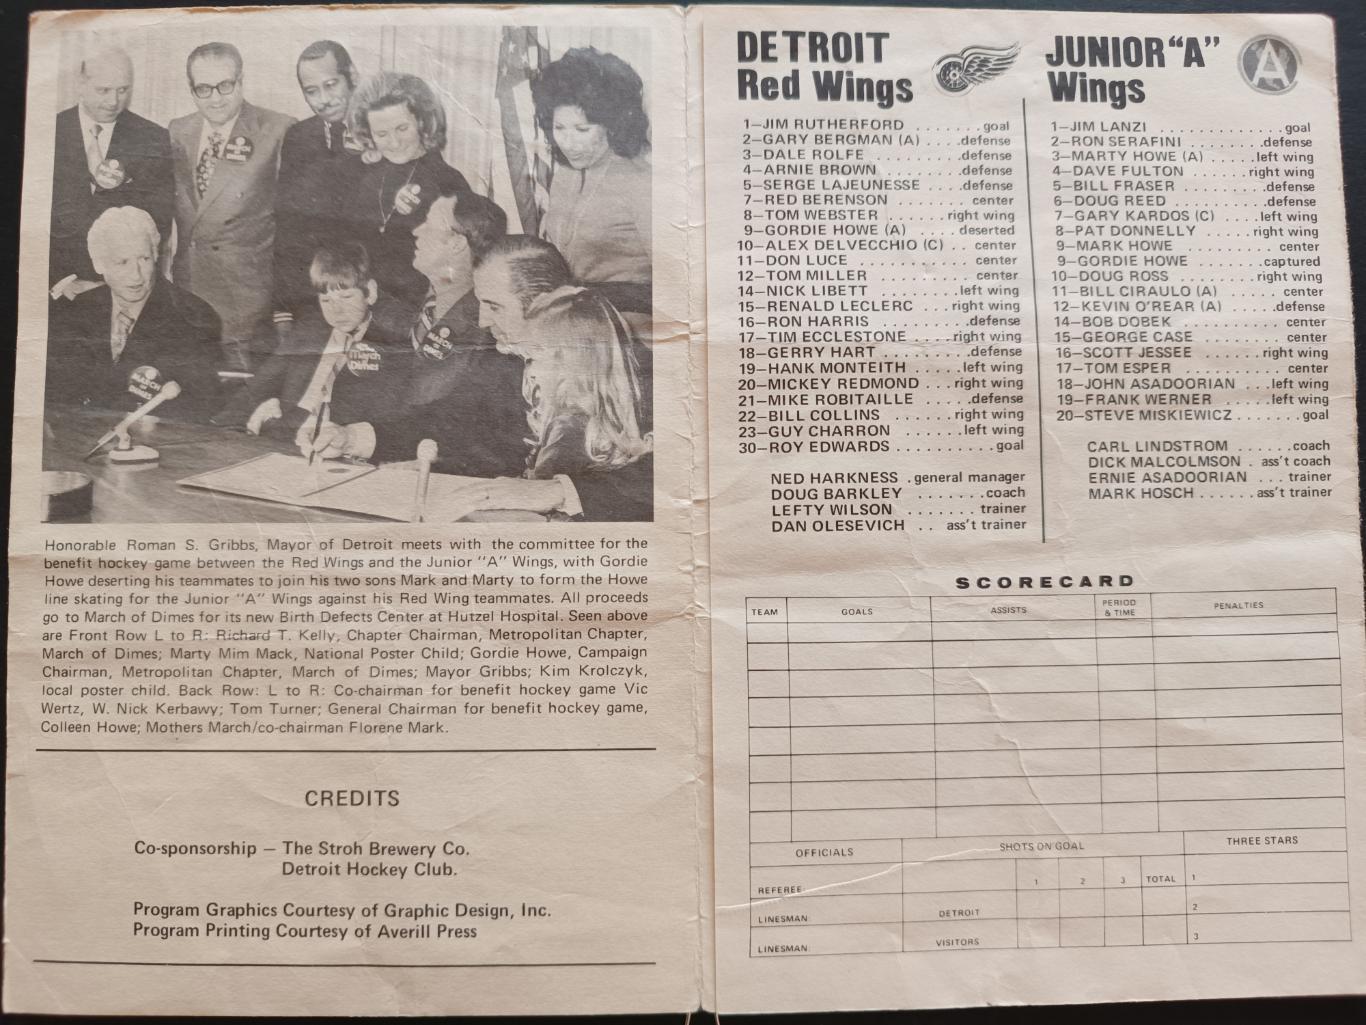 ПРОГРАММА МАТЧА НХЛ ДЕТРОИТ ЮНИОРЫ А 1971 FEB.17 DETROIT VS. JUNIOR A PROGRAM 1